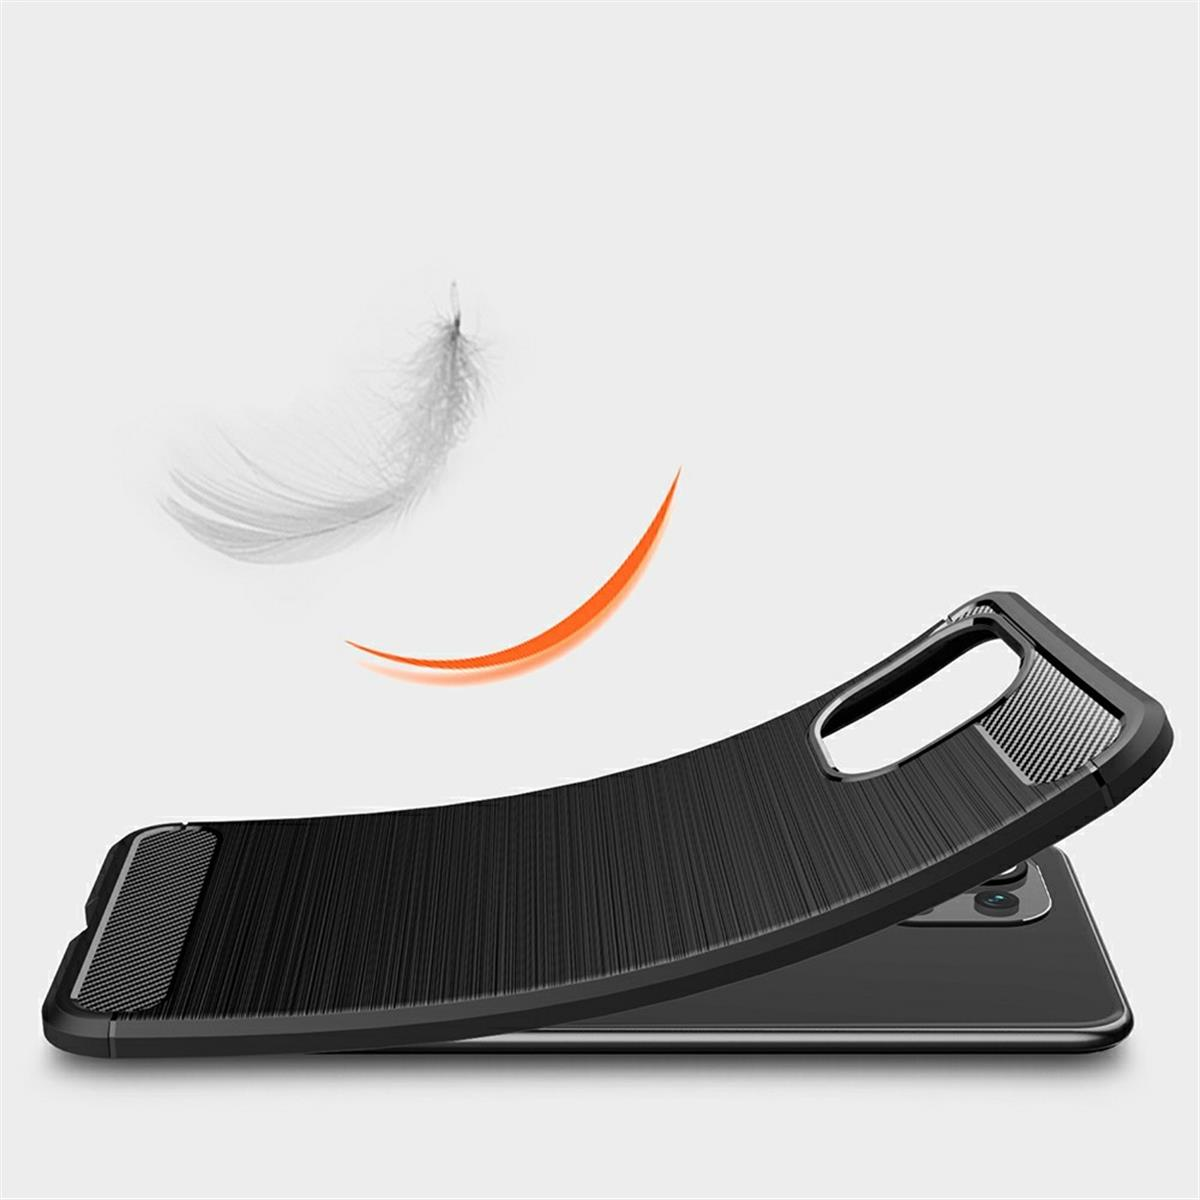 COVERKINGZ Handycase Backcover, Lite im NE Mi Xiaomi, schwarz Carbon 5G, Lite 5G / 11 11 Look